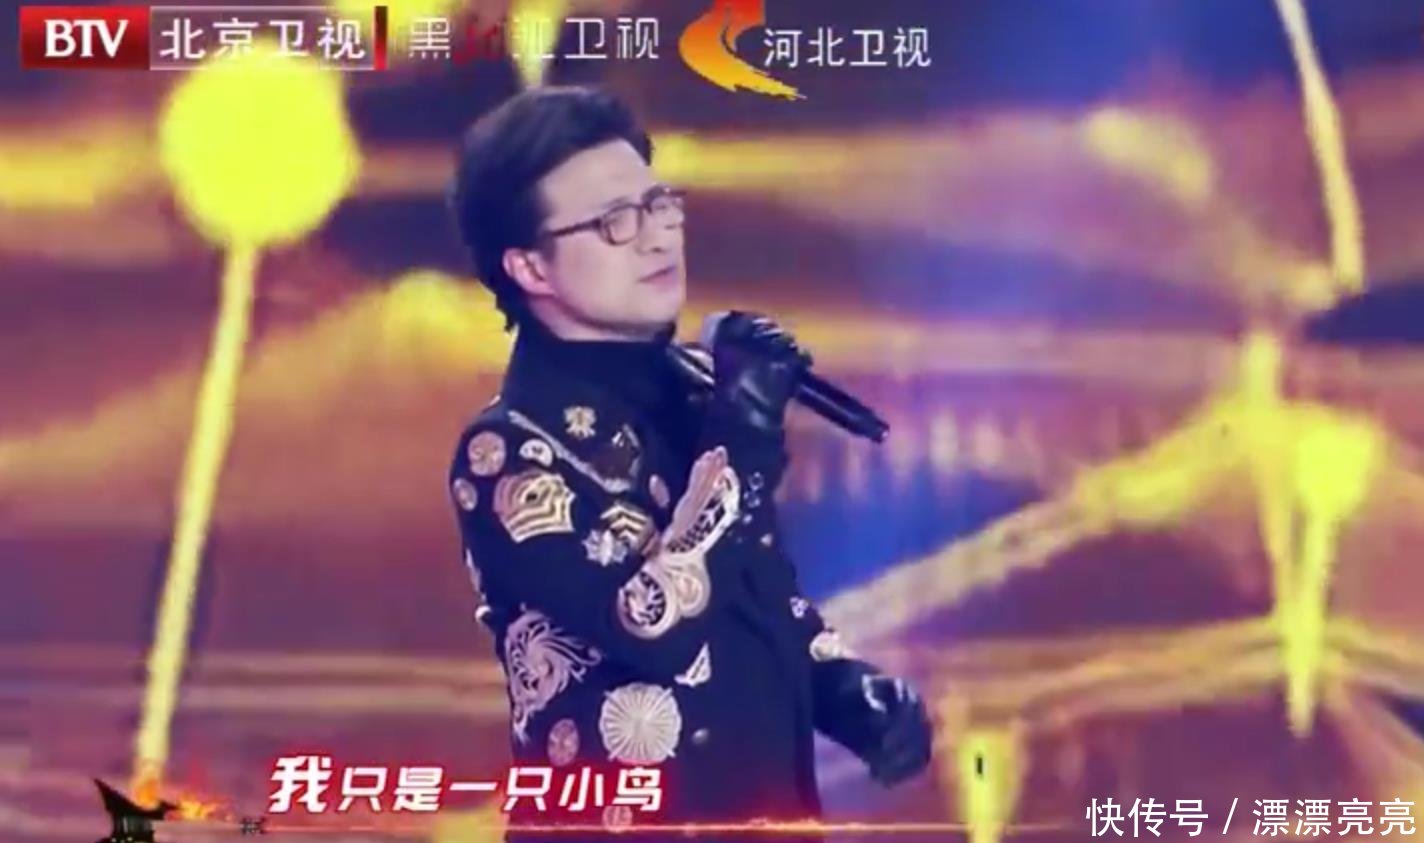 北京跨年晚会承包笑点,汪峰唱歌暴露天气有多